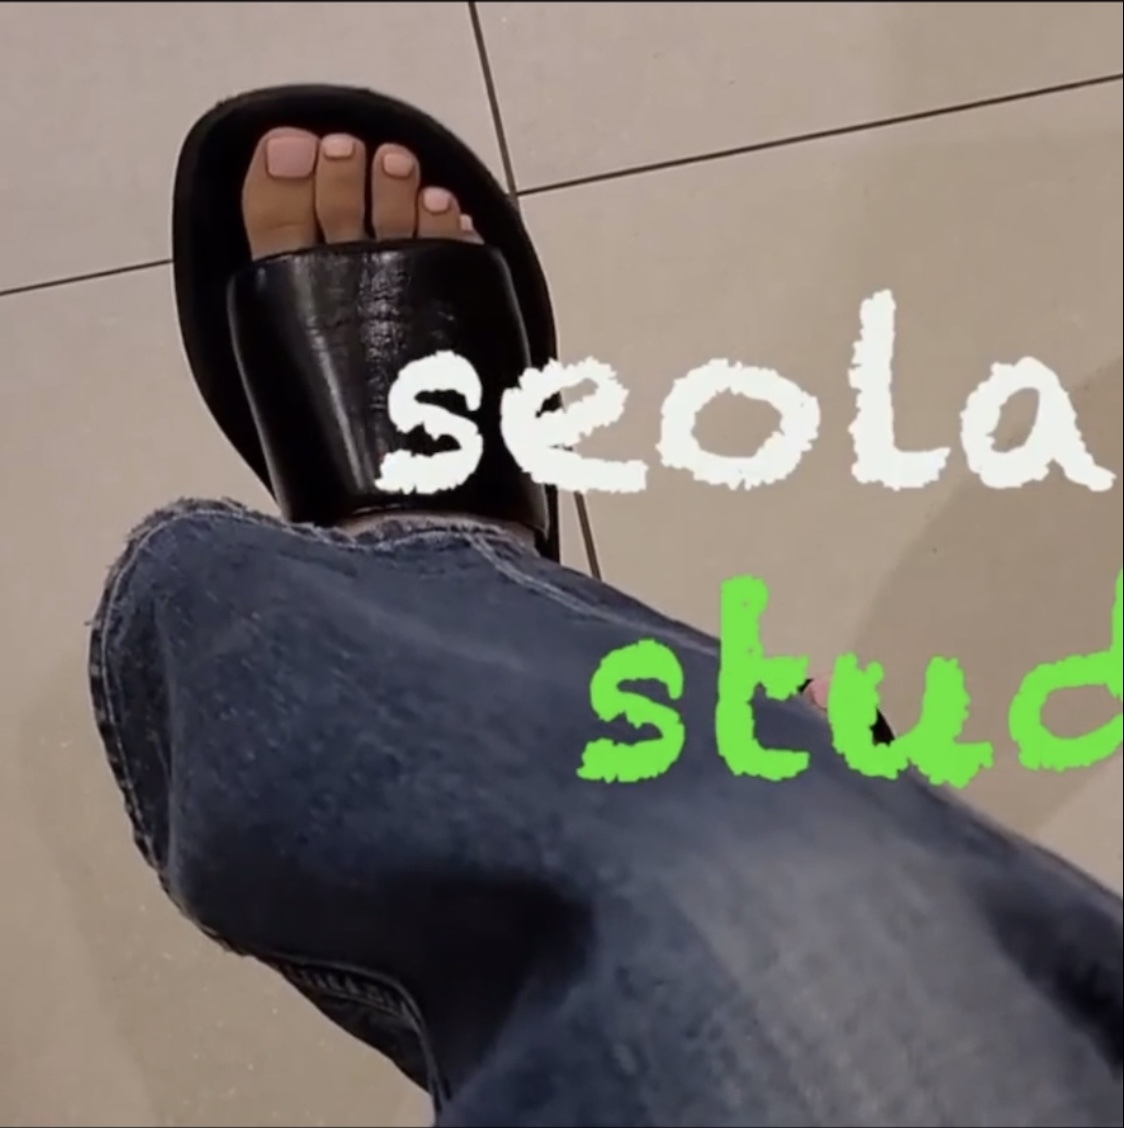 Seola Feet